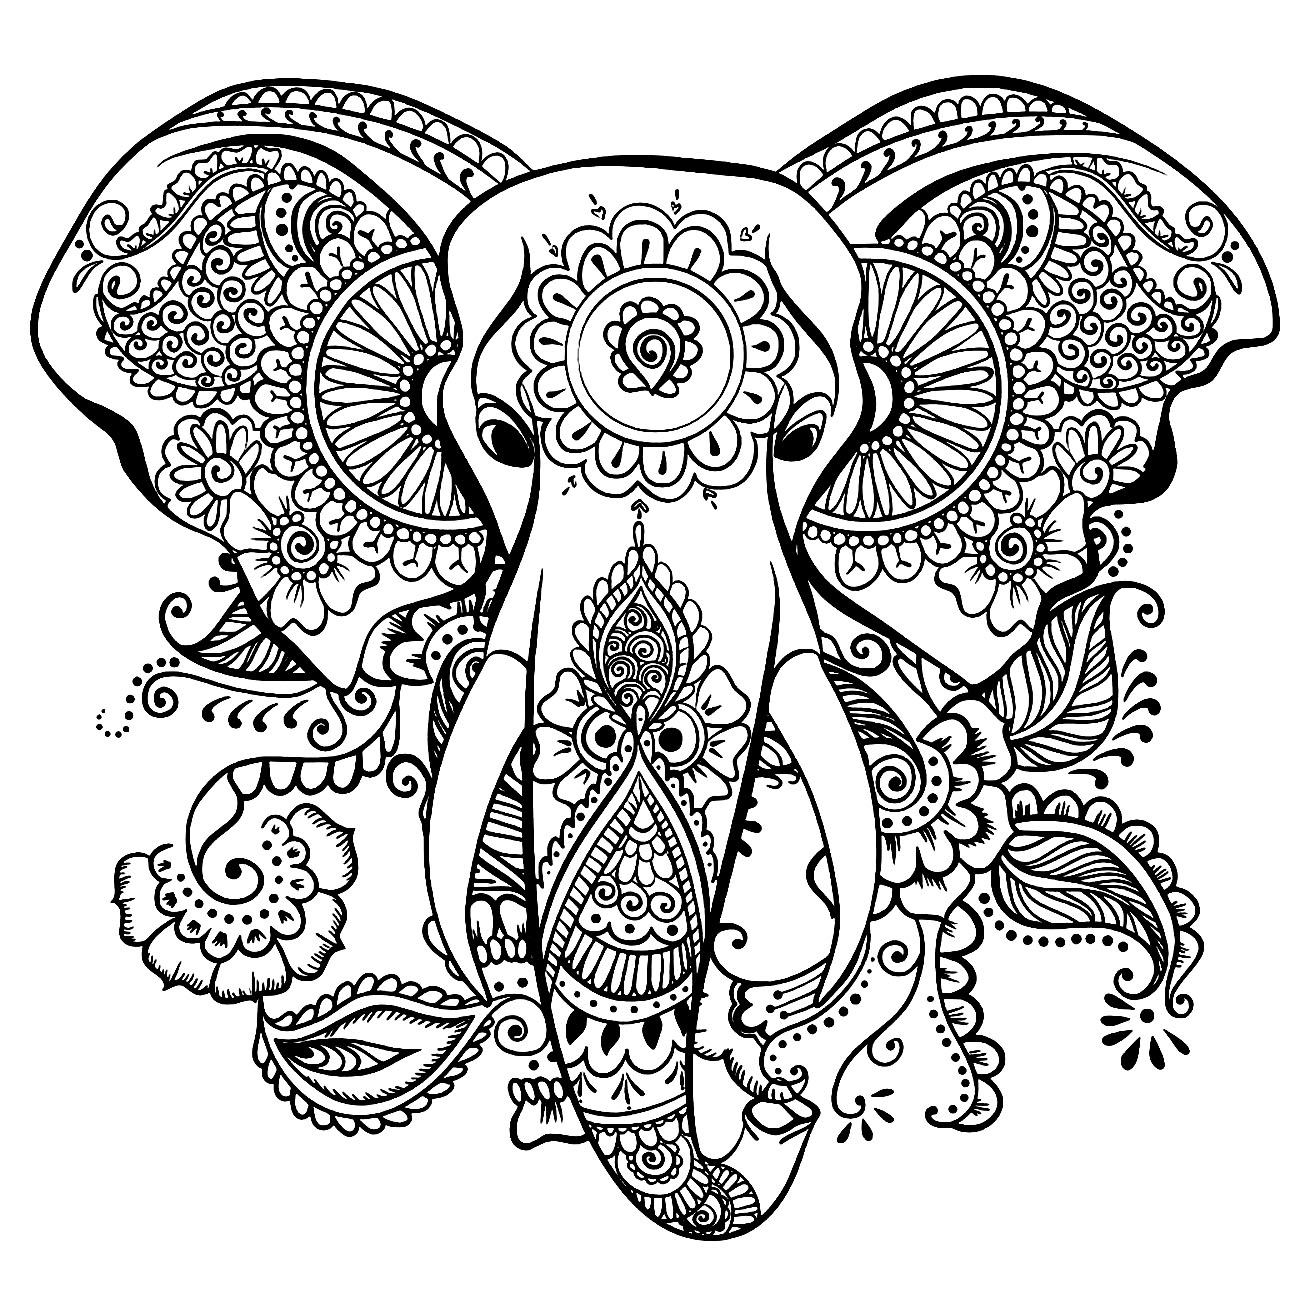 Coloração de elefantes super simples